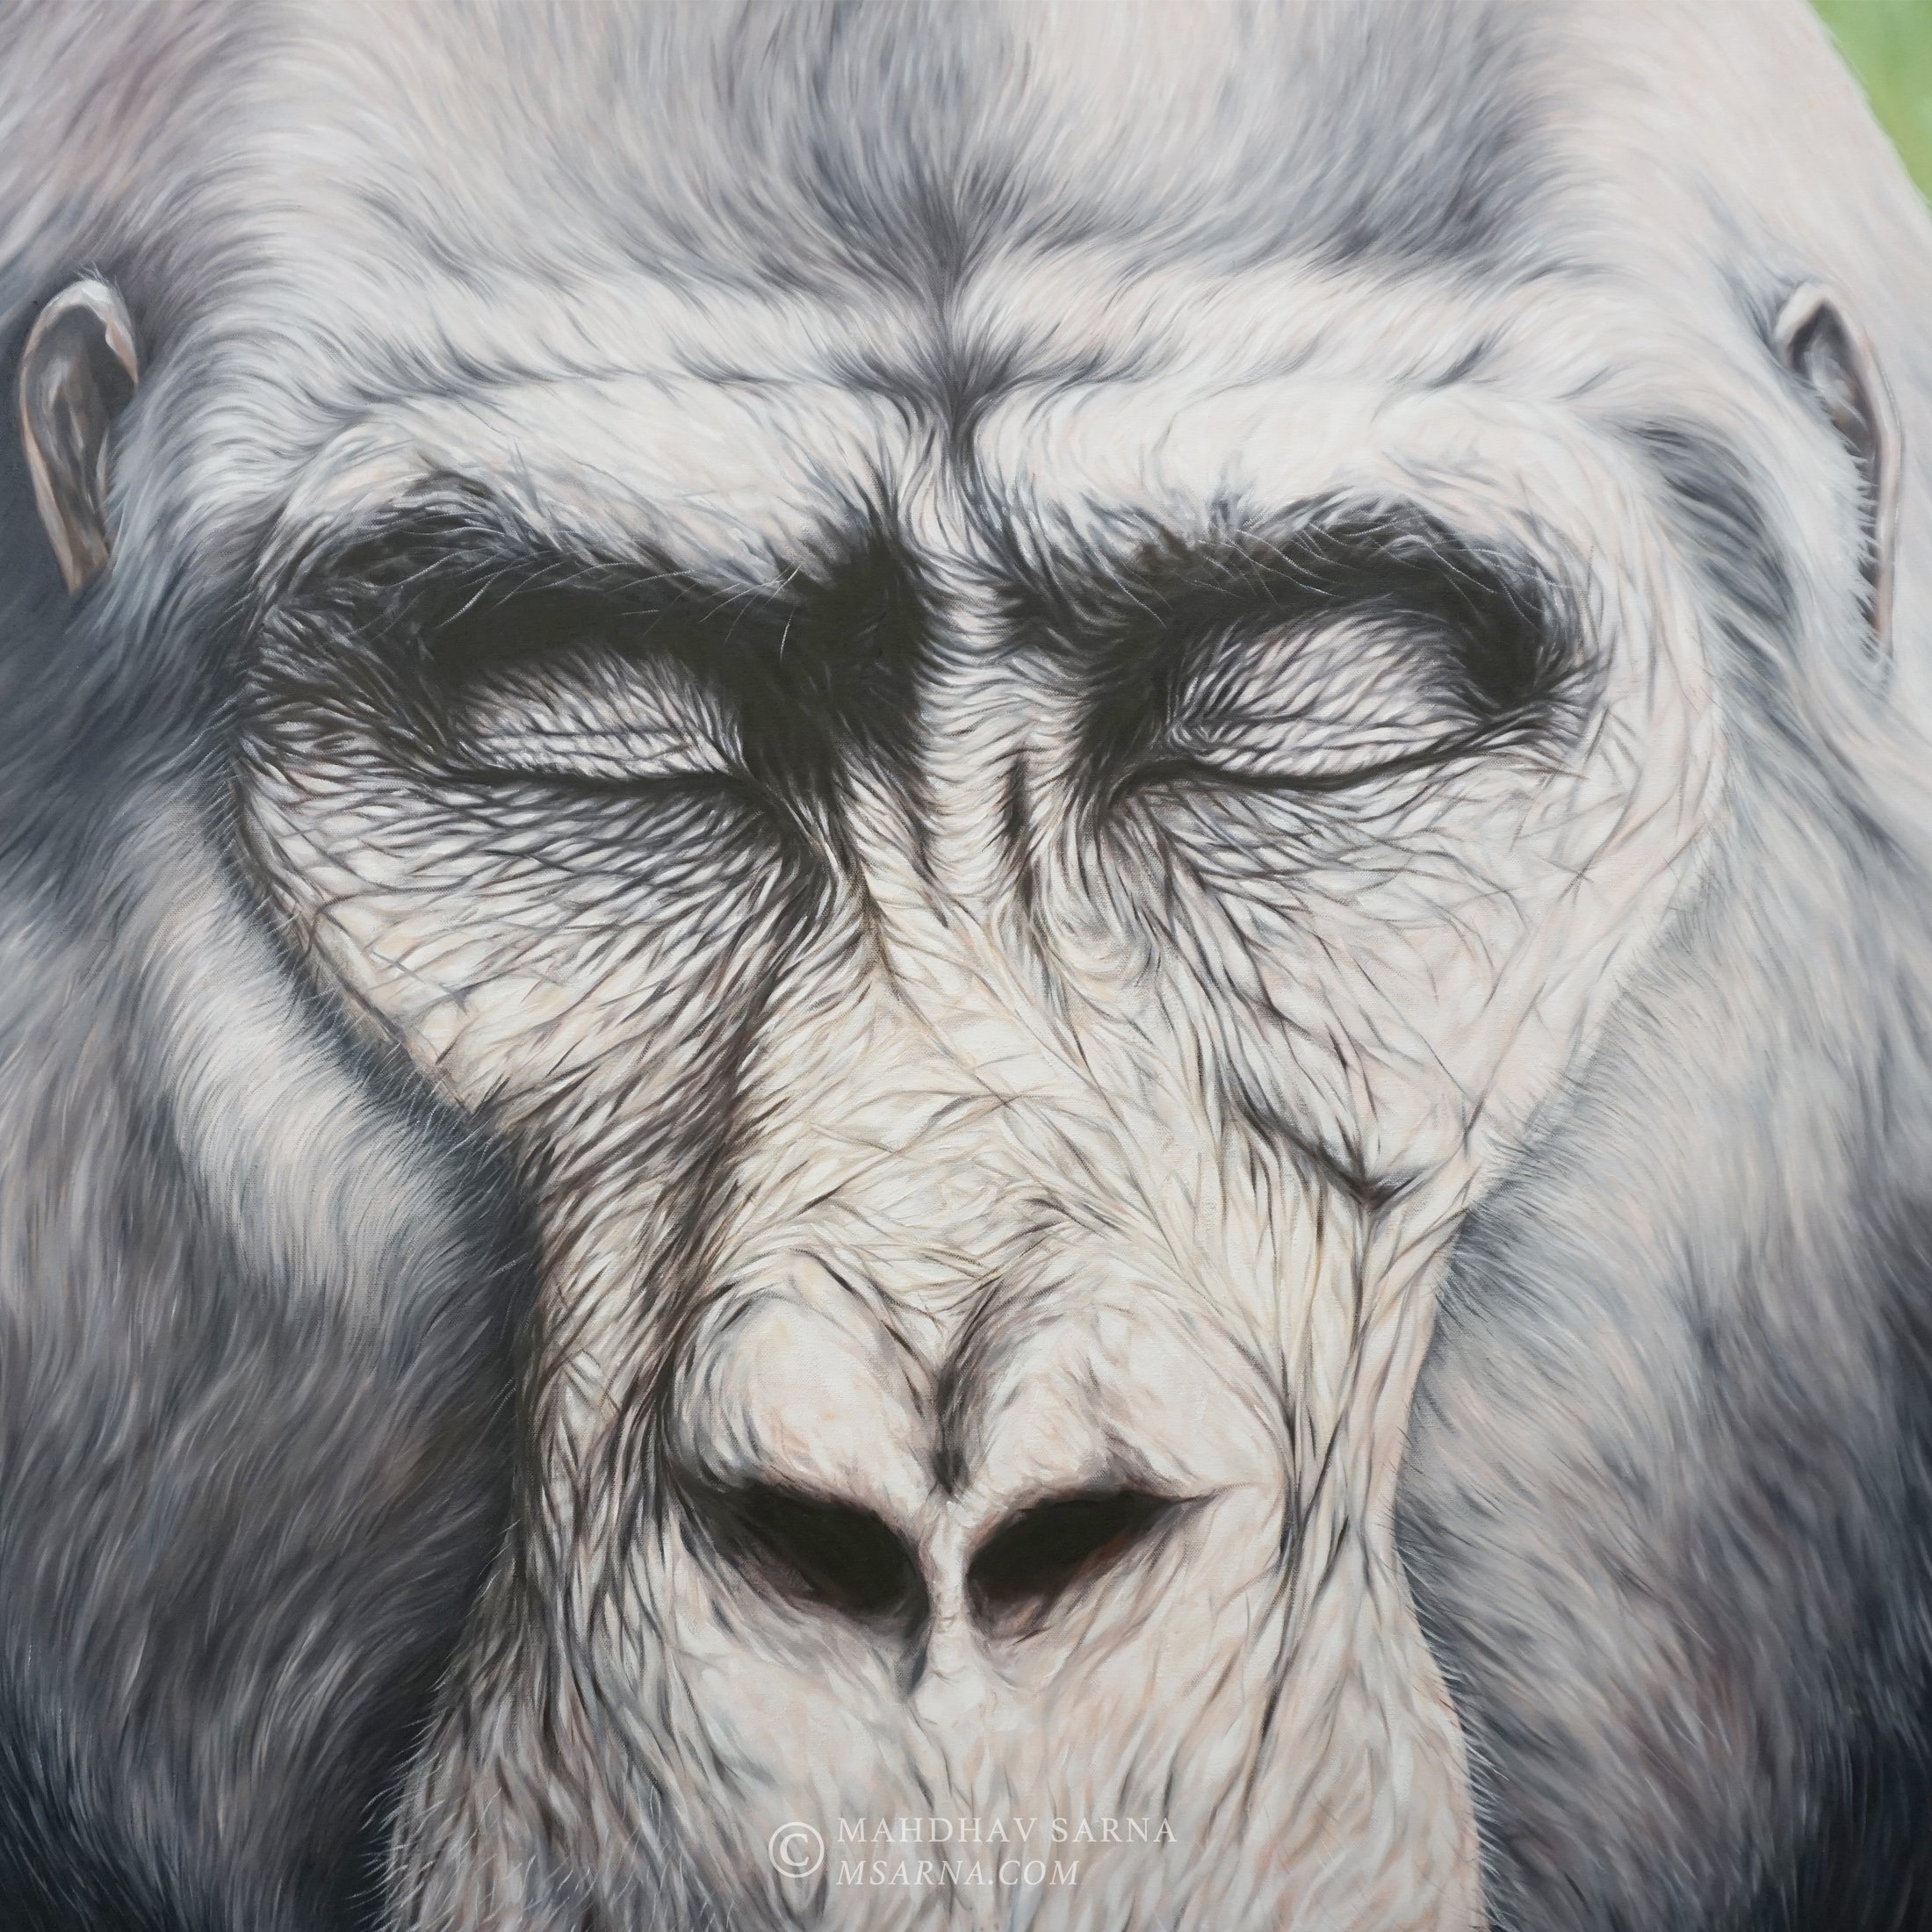 gorilla oil painting ists wildlife art mahdhav sarna 02.jpg